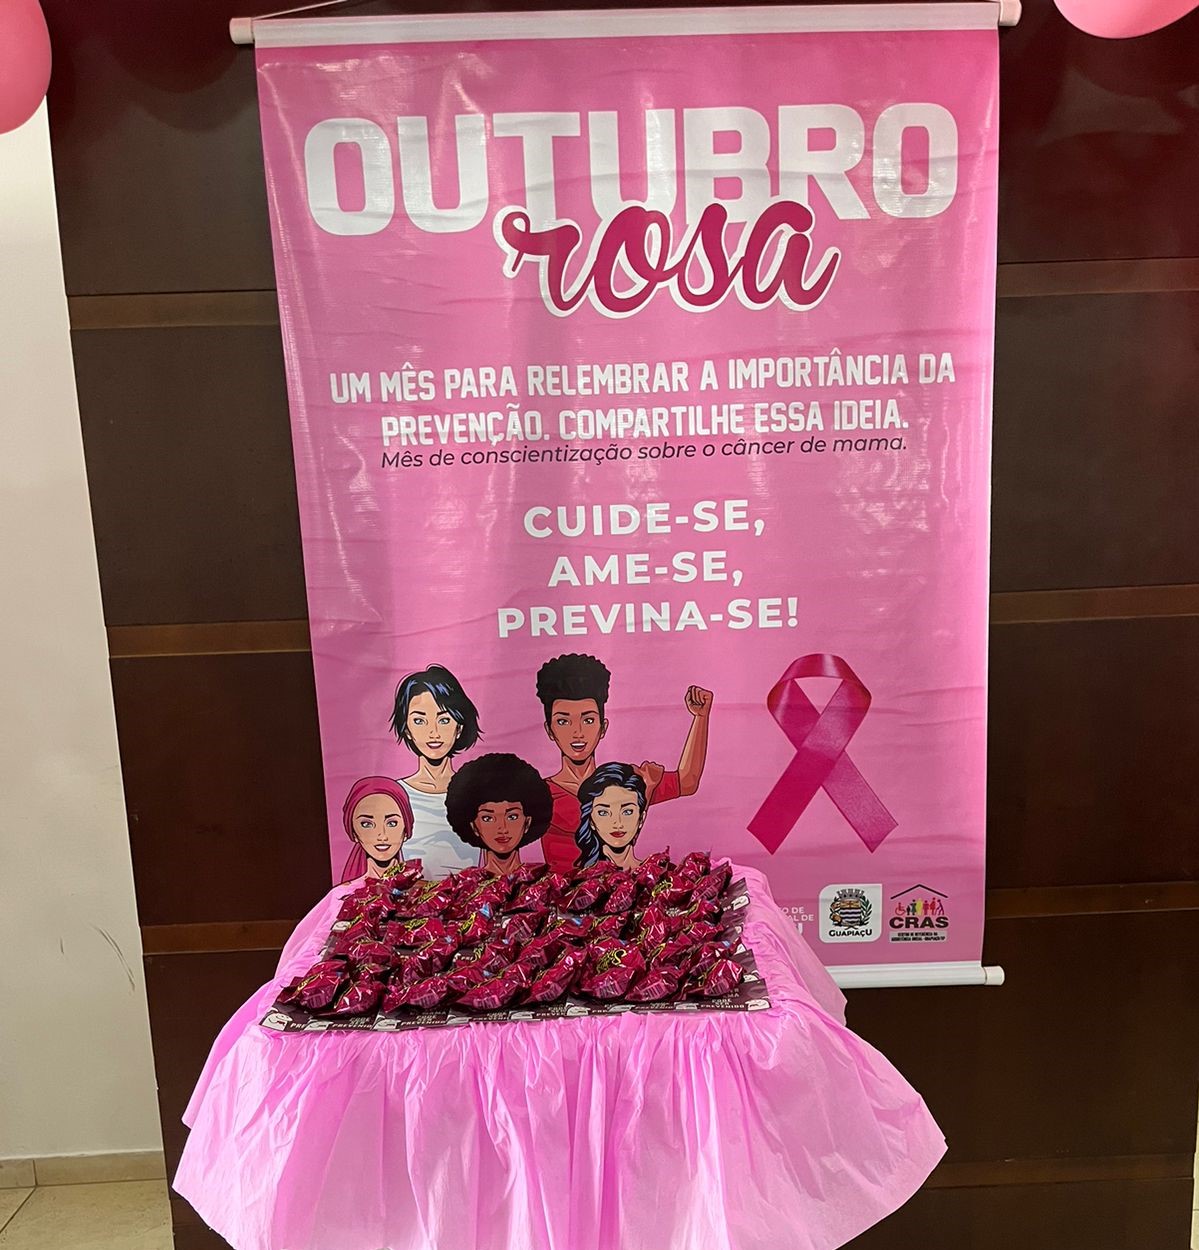 Ações do Outubro Rosa reforçam importância do cuidado com a saúde feminina